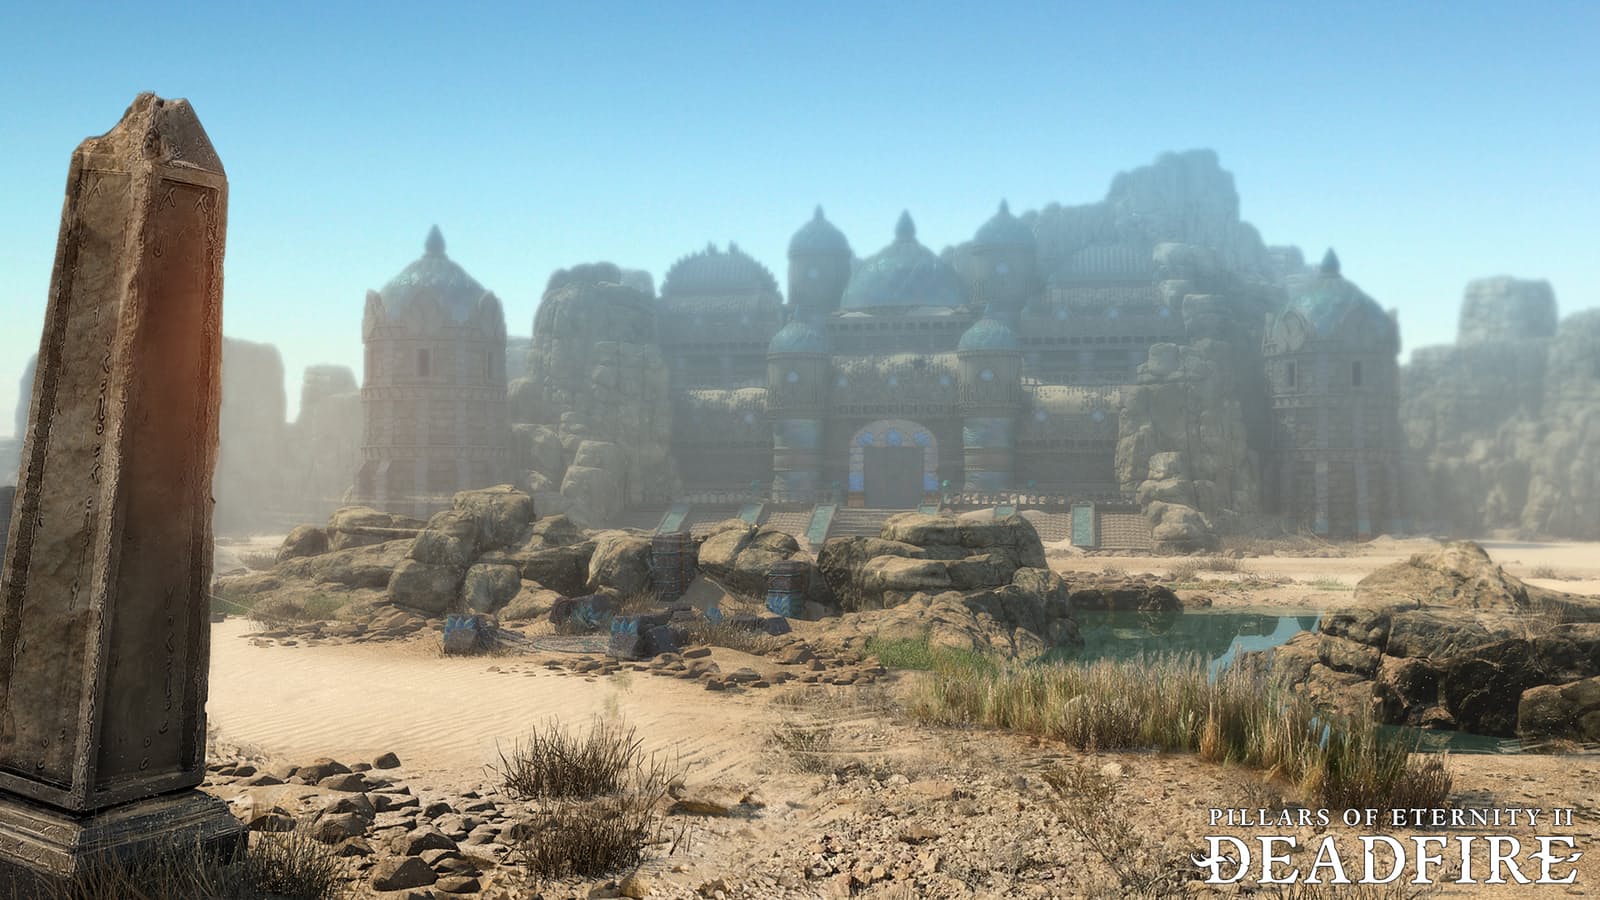 Obrazki dla Pillars of Eternity 2: Deadfire z rozbudowaną opcją Nowej Gry+